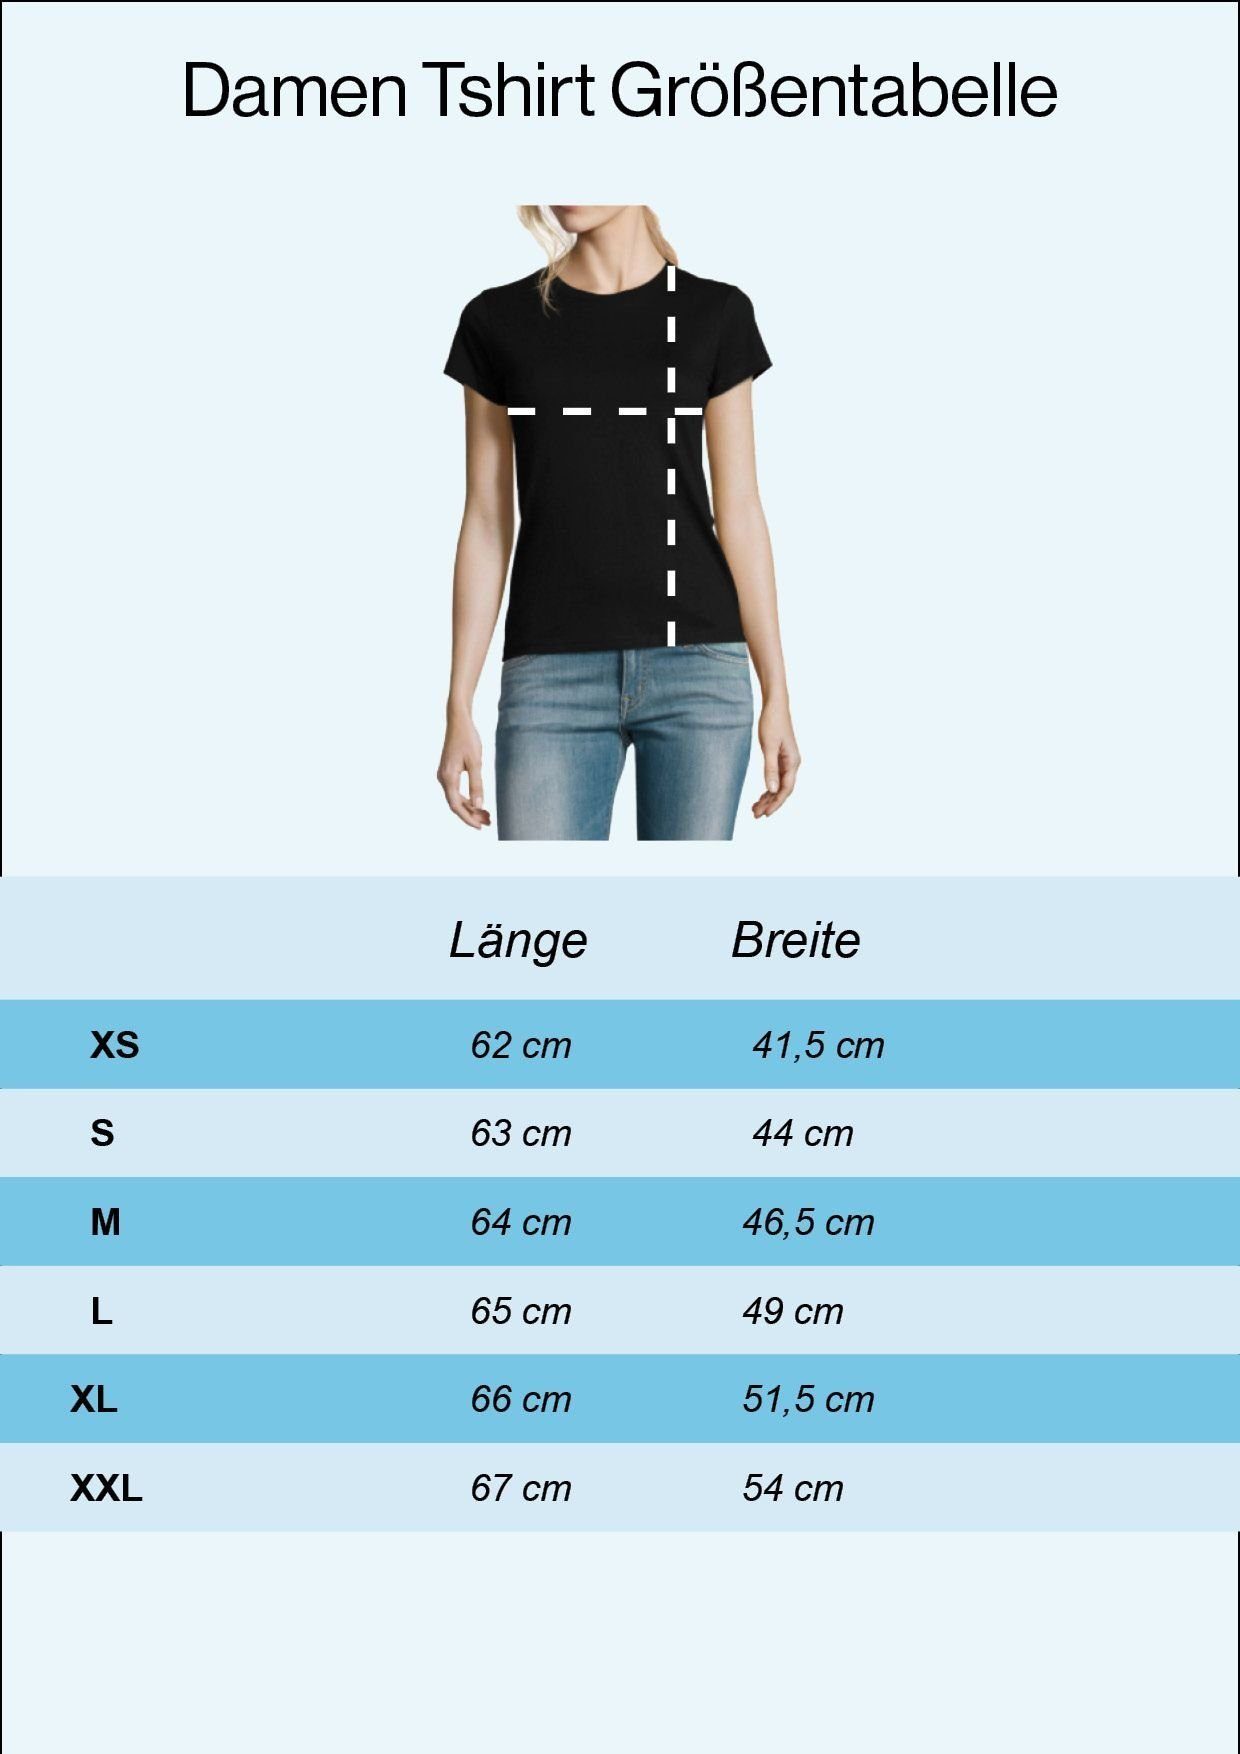 T-Shirt T-Shirt Motiv mit Evolution Motorrad Youth trendigem Schwarz Designz Damen